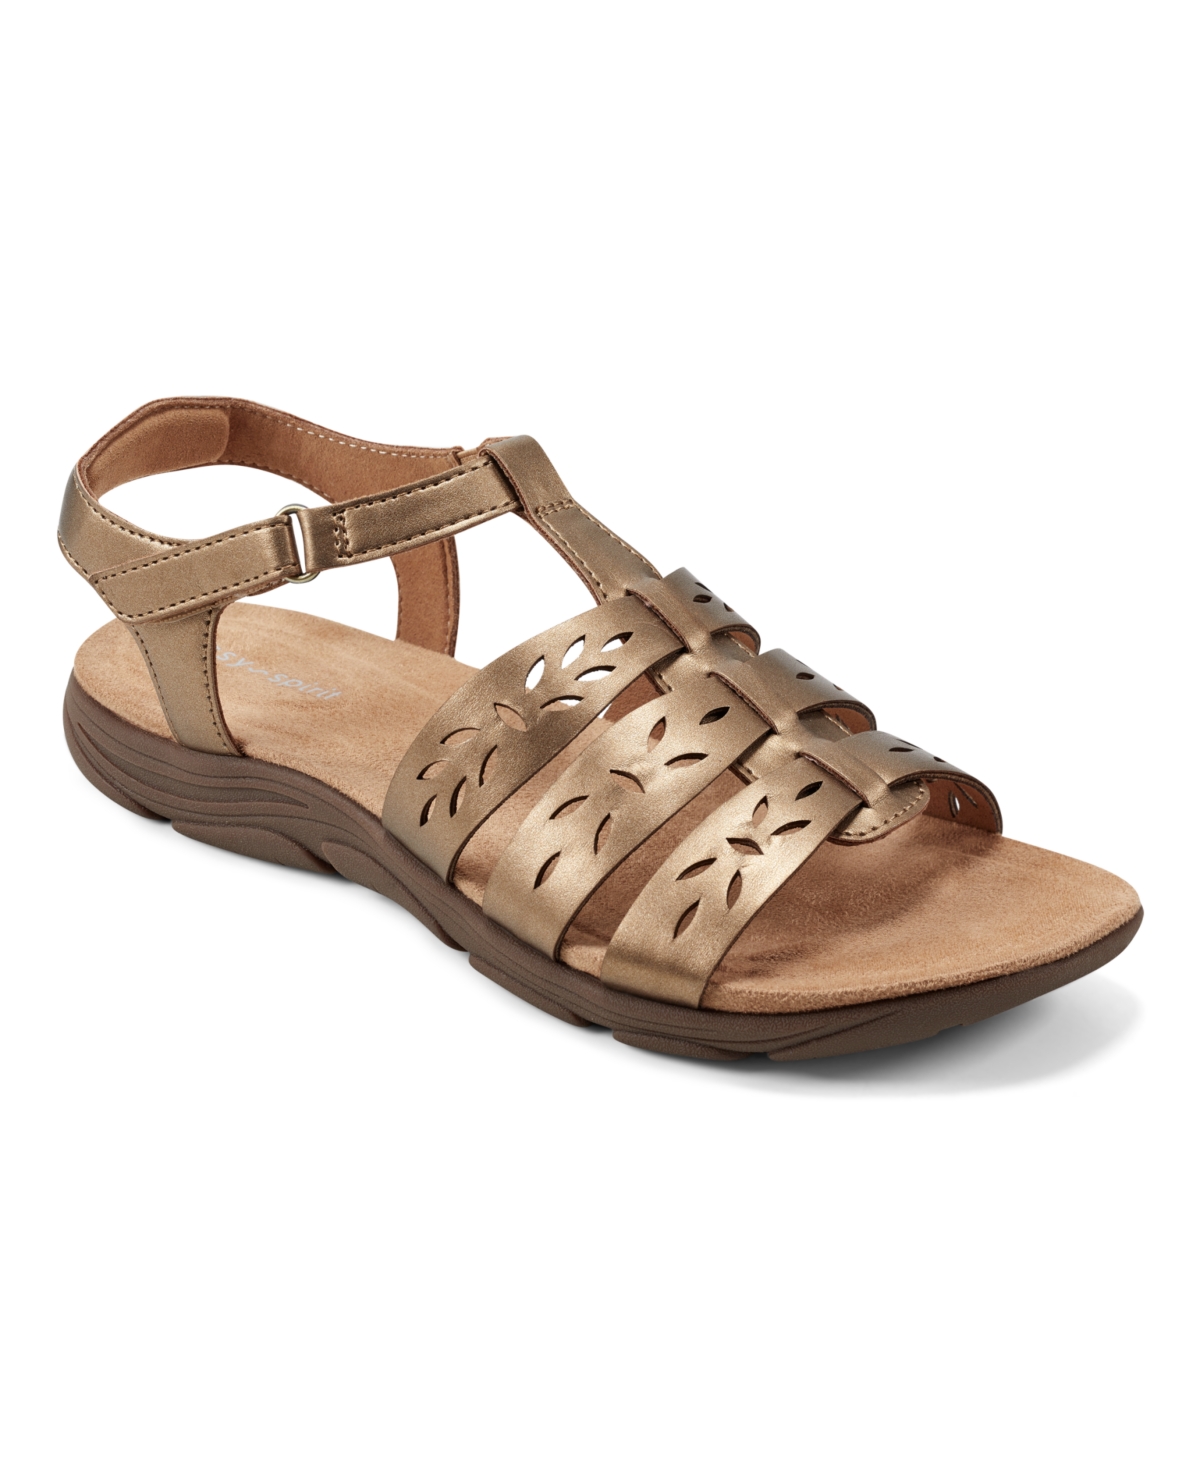 Women's Luisa Round Toe Strappy Flat Sandals - Medium Brown